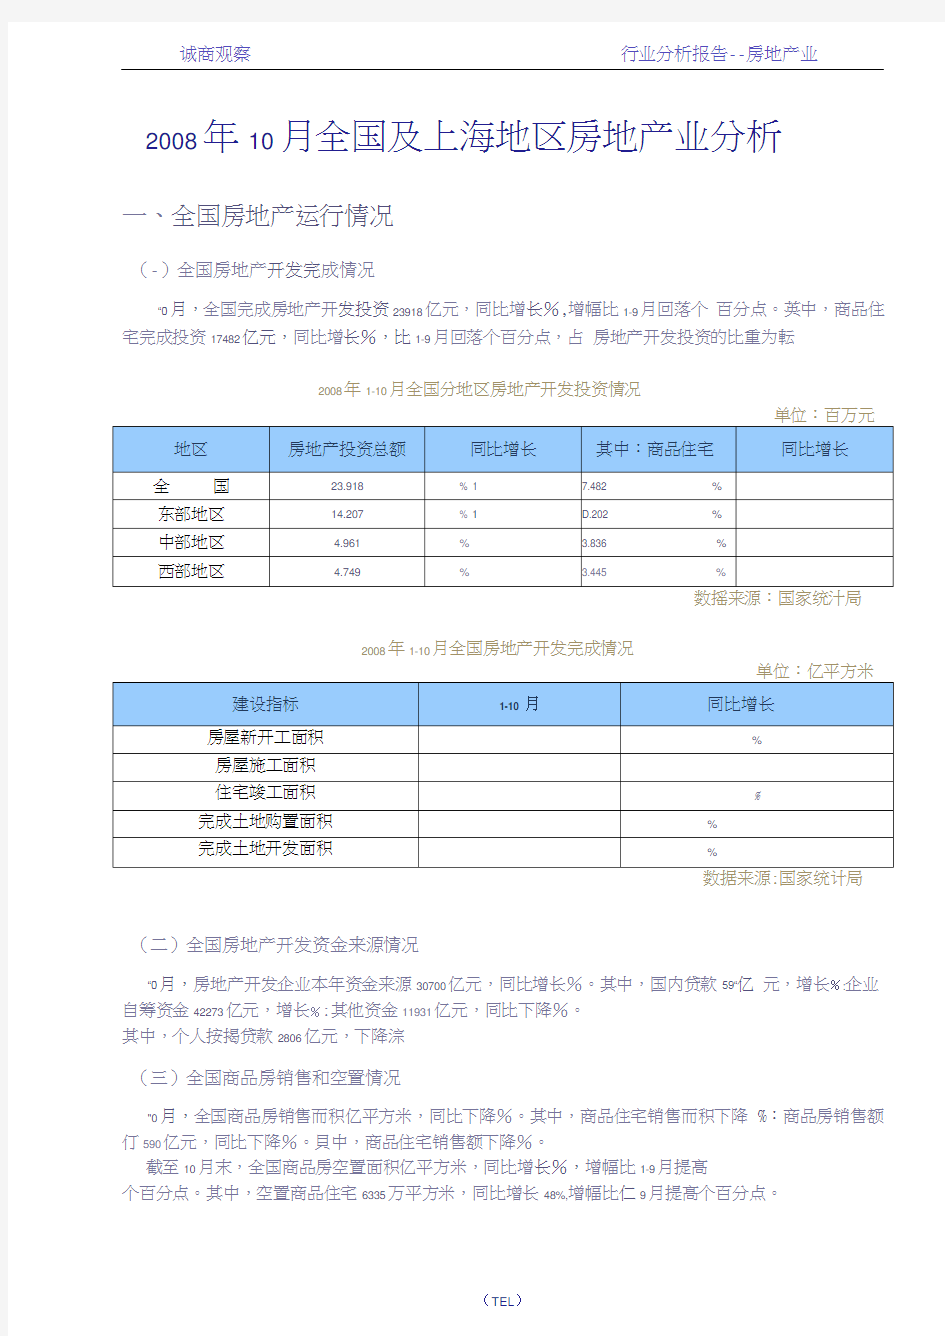 及上海房地产市场研究报告